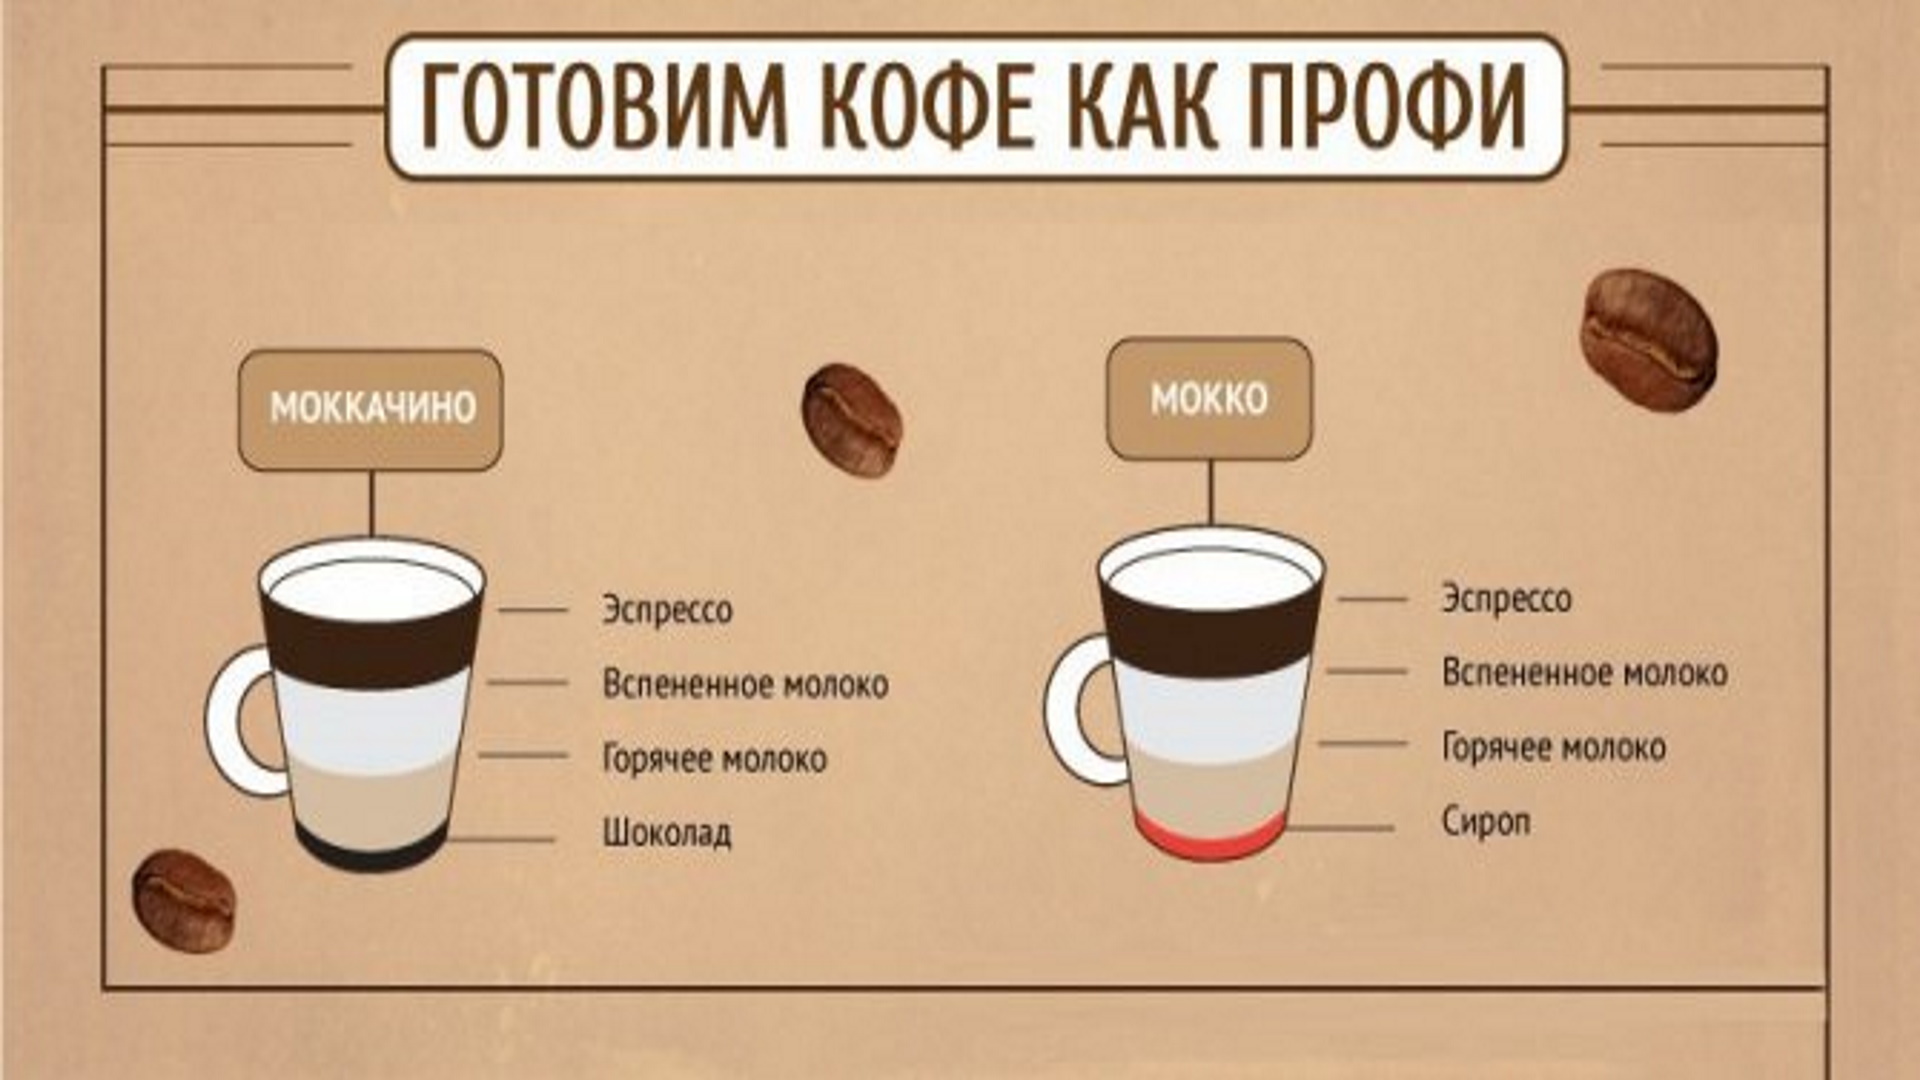 Мокко состав. Мокко кофе. Мокко кофейные напитки. Мокко и Мокачино в чем разница. Мокачино кофе.